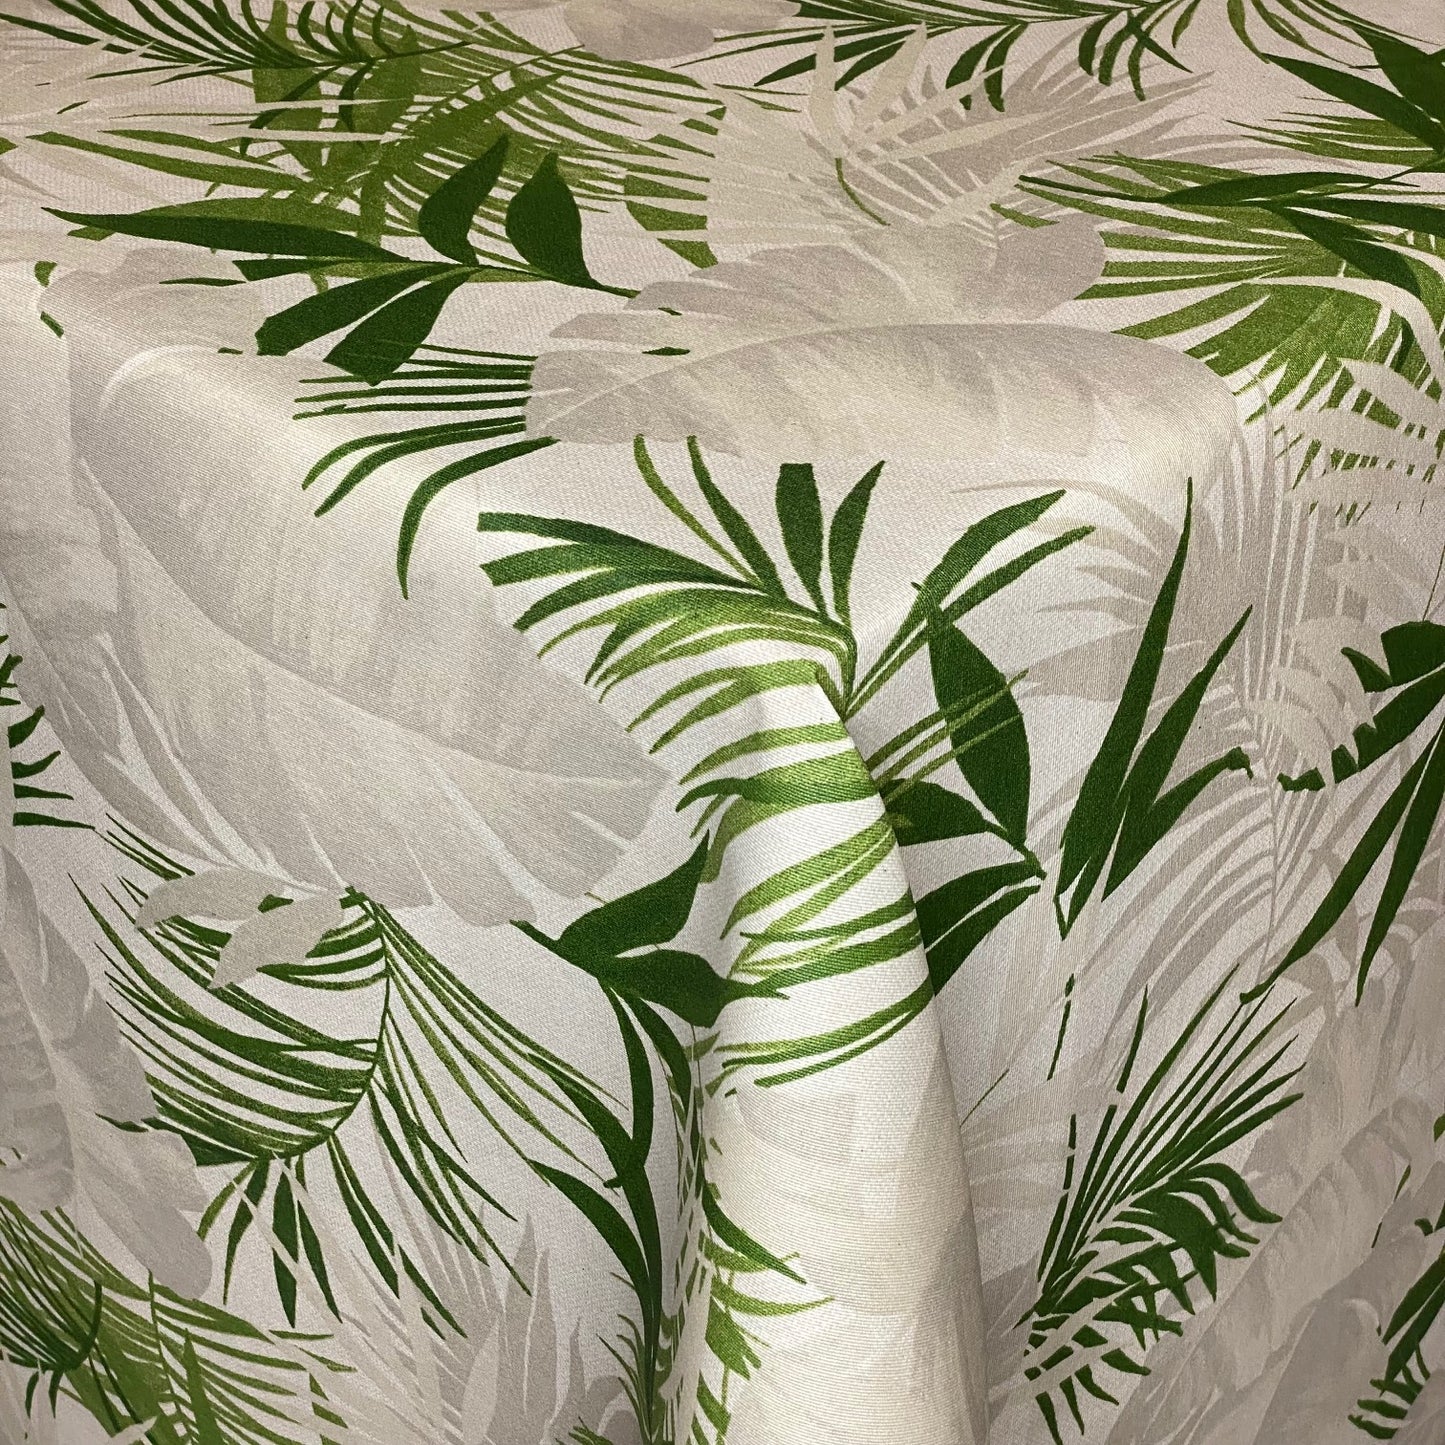 textile Baumwolltischdecke Dschungel Palmen Blätter eckig rund oval kaufen kevkus